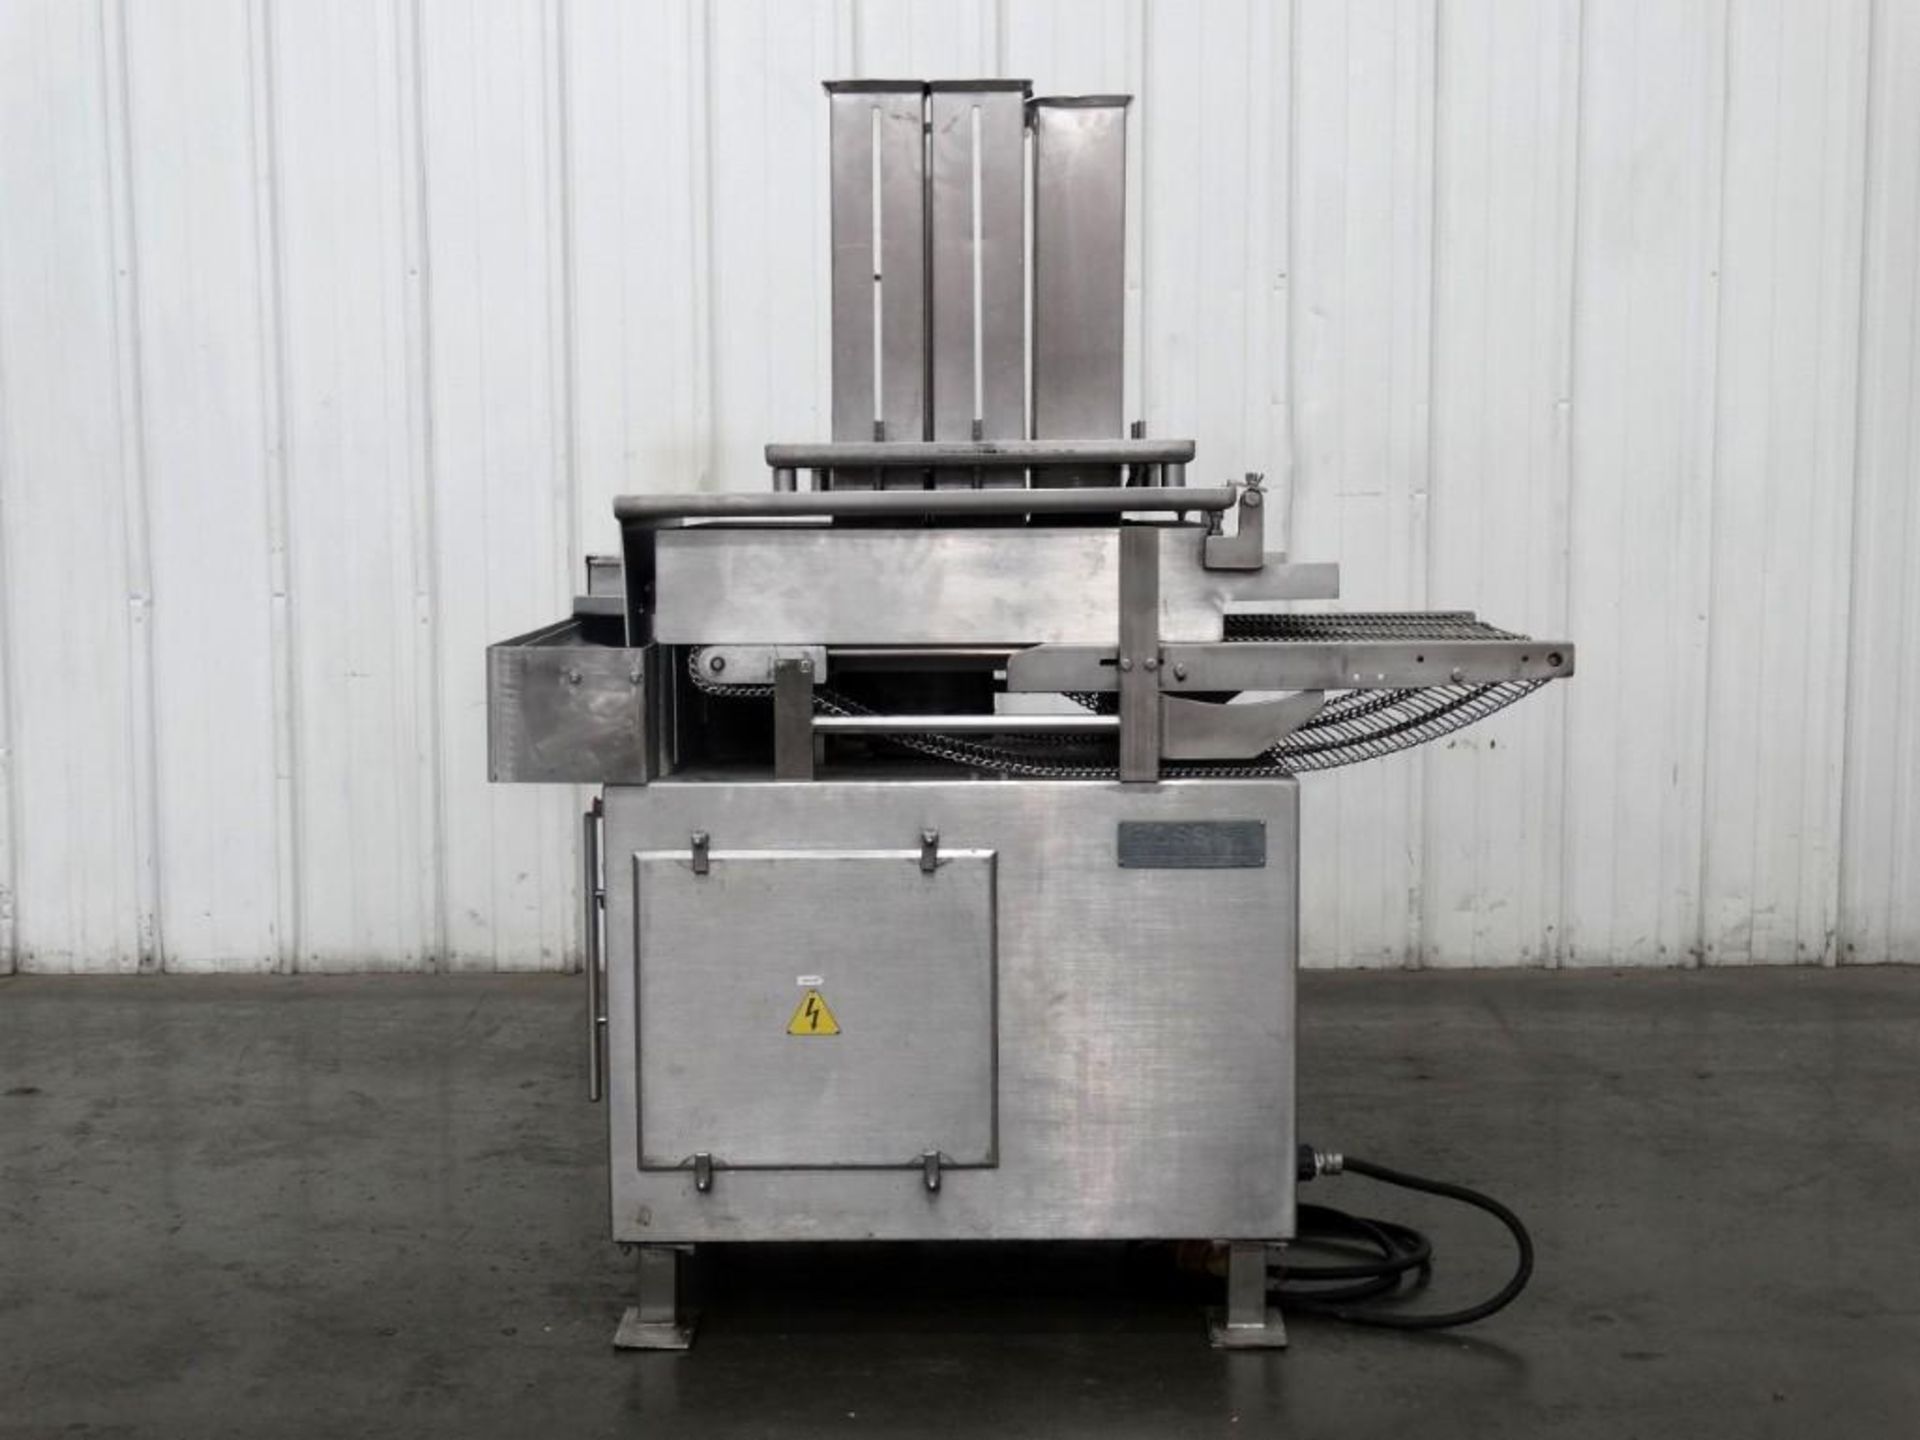 Ross Model 950-4 Stainless Steel Meat Slicer